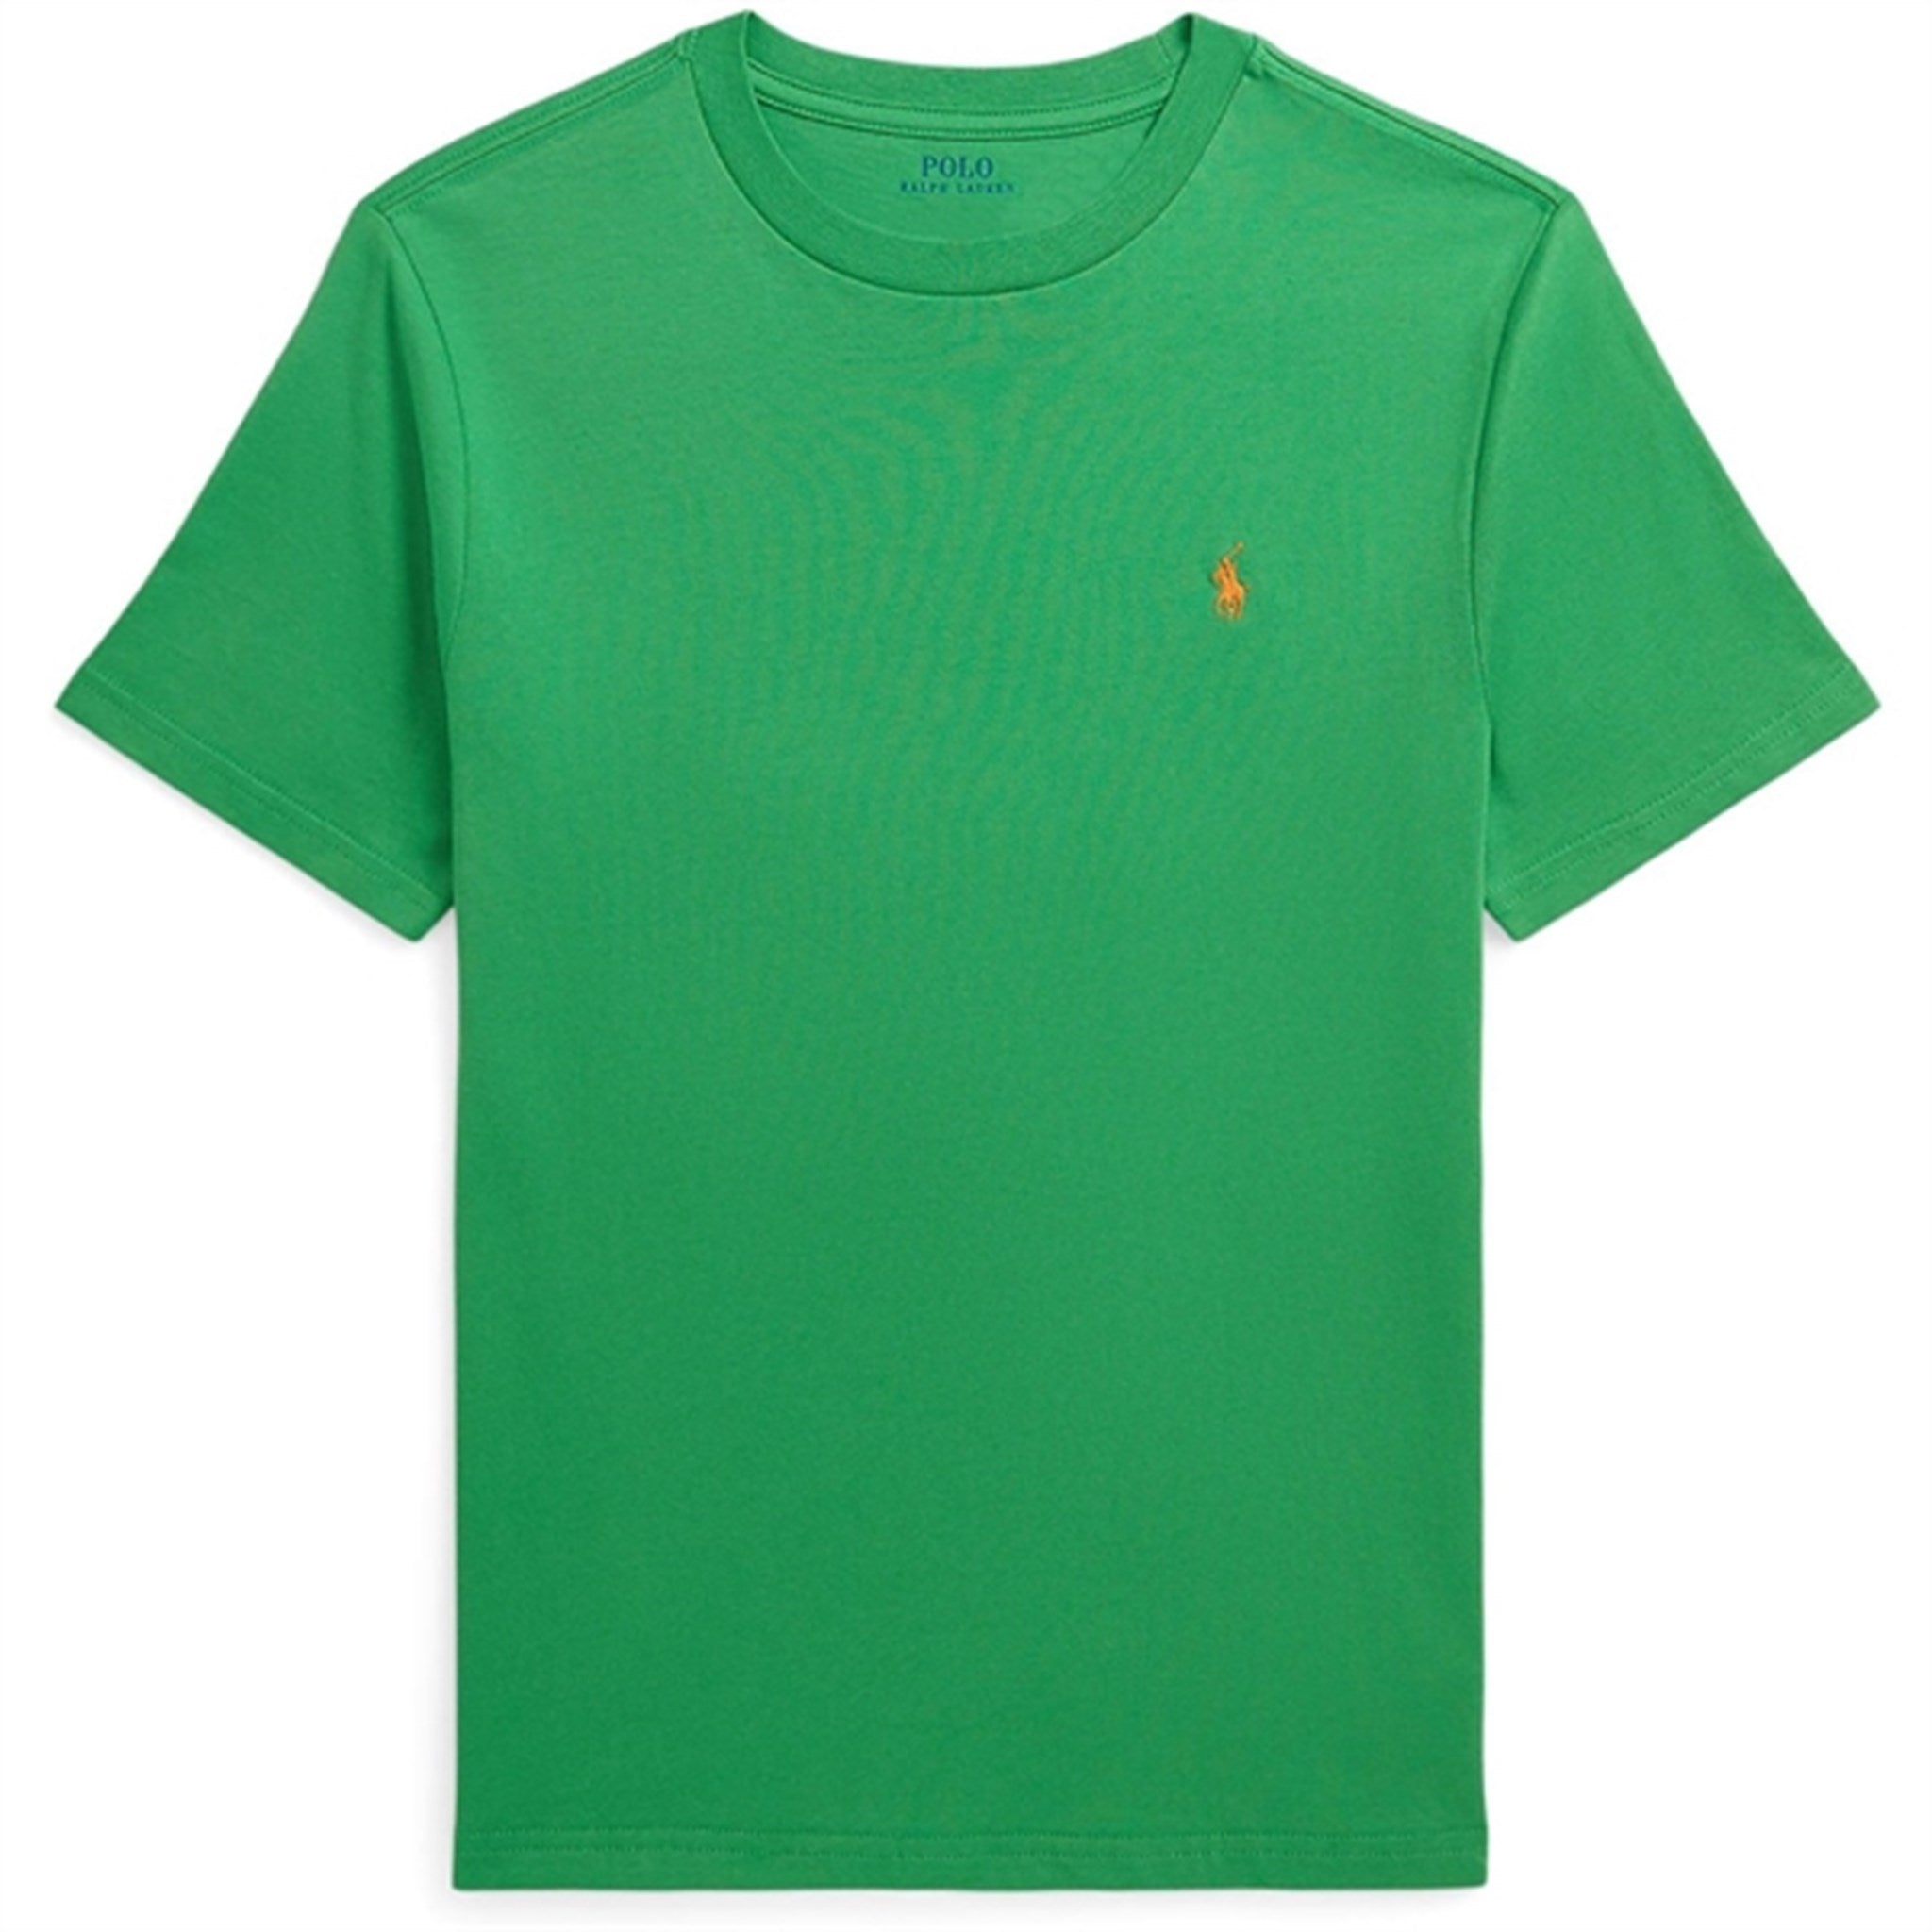 Polo Ralph Lauren Boys T-Shirt Preppy Green